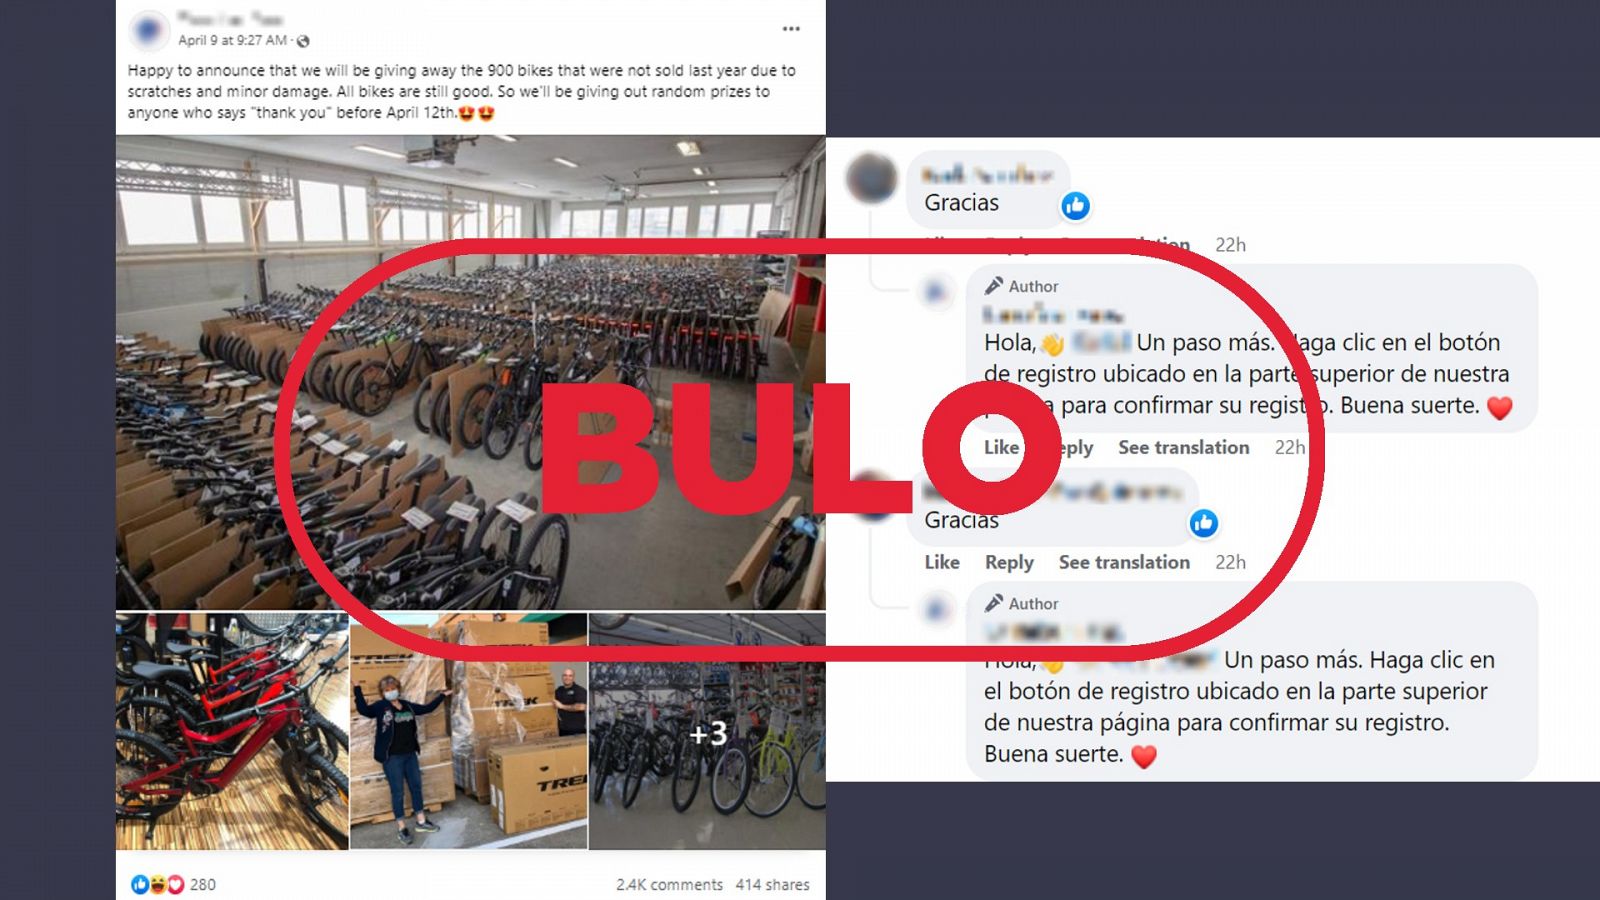 Publicación de Facebook que suplanta la identidad de Carrefour para promocionar un falso sorteo de 900 bicicletas. Con el sello 'bulo' en rojo.